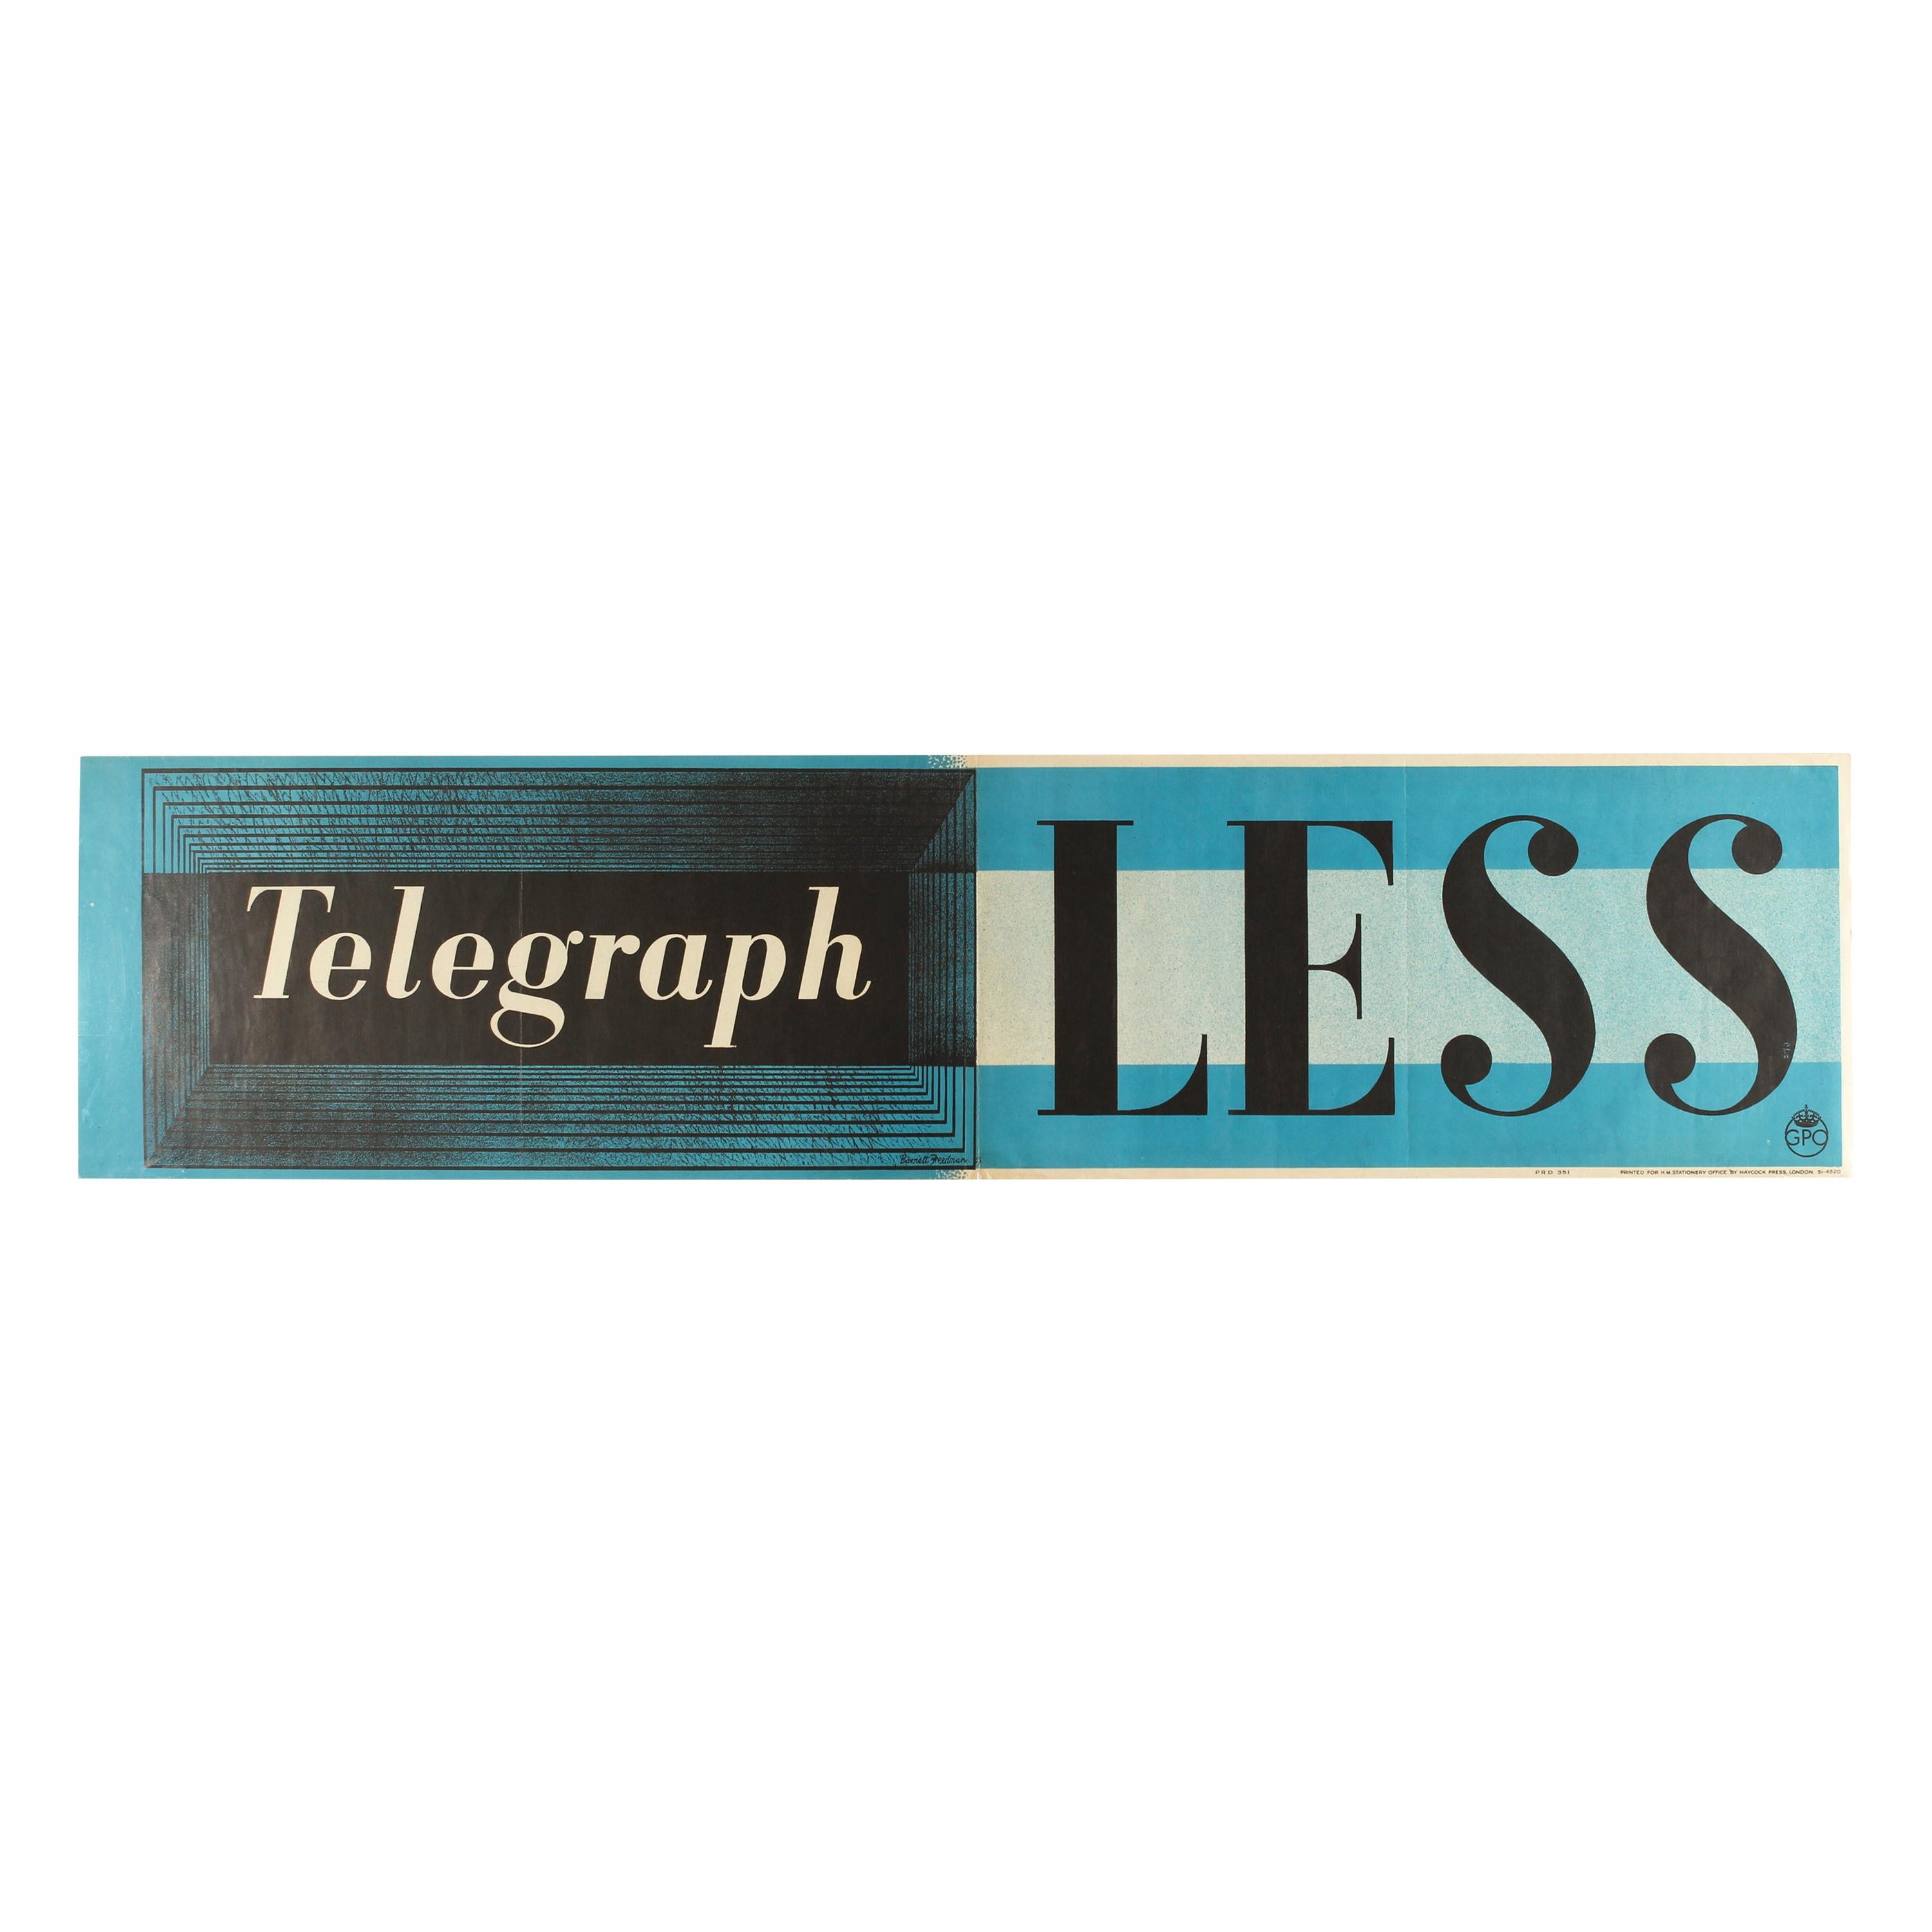 Affiche rétro originale Telegraph Less GPO Post Office:: typographie moderniste de la Seconde Guerre mondiale